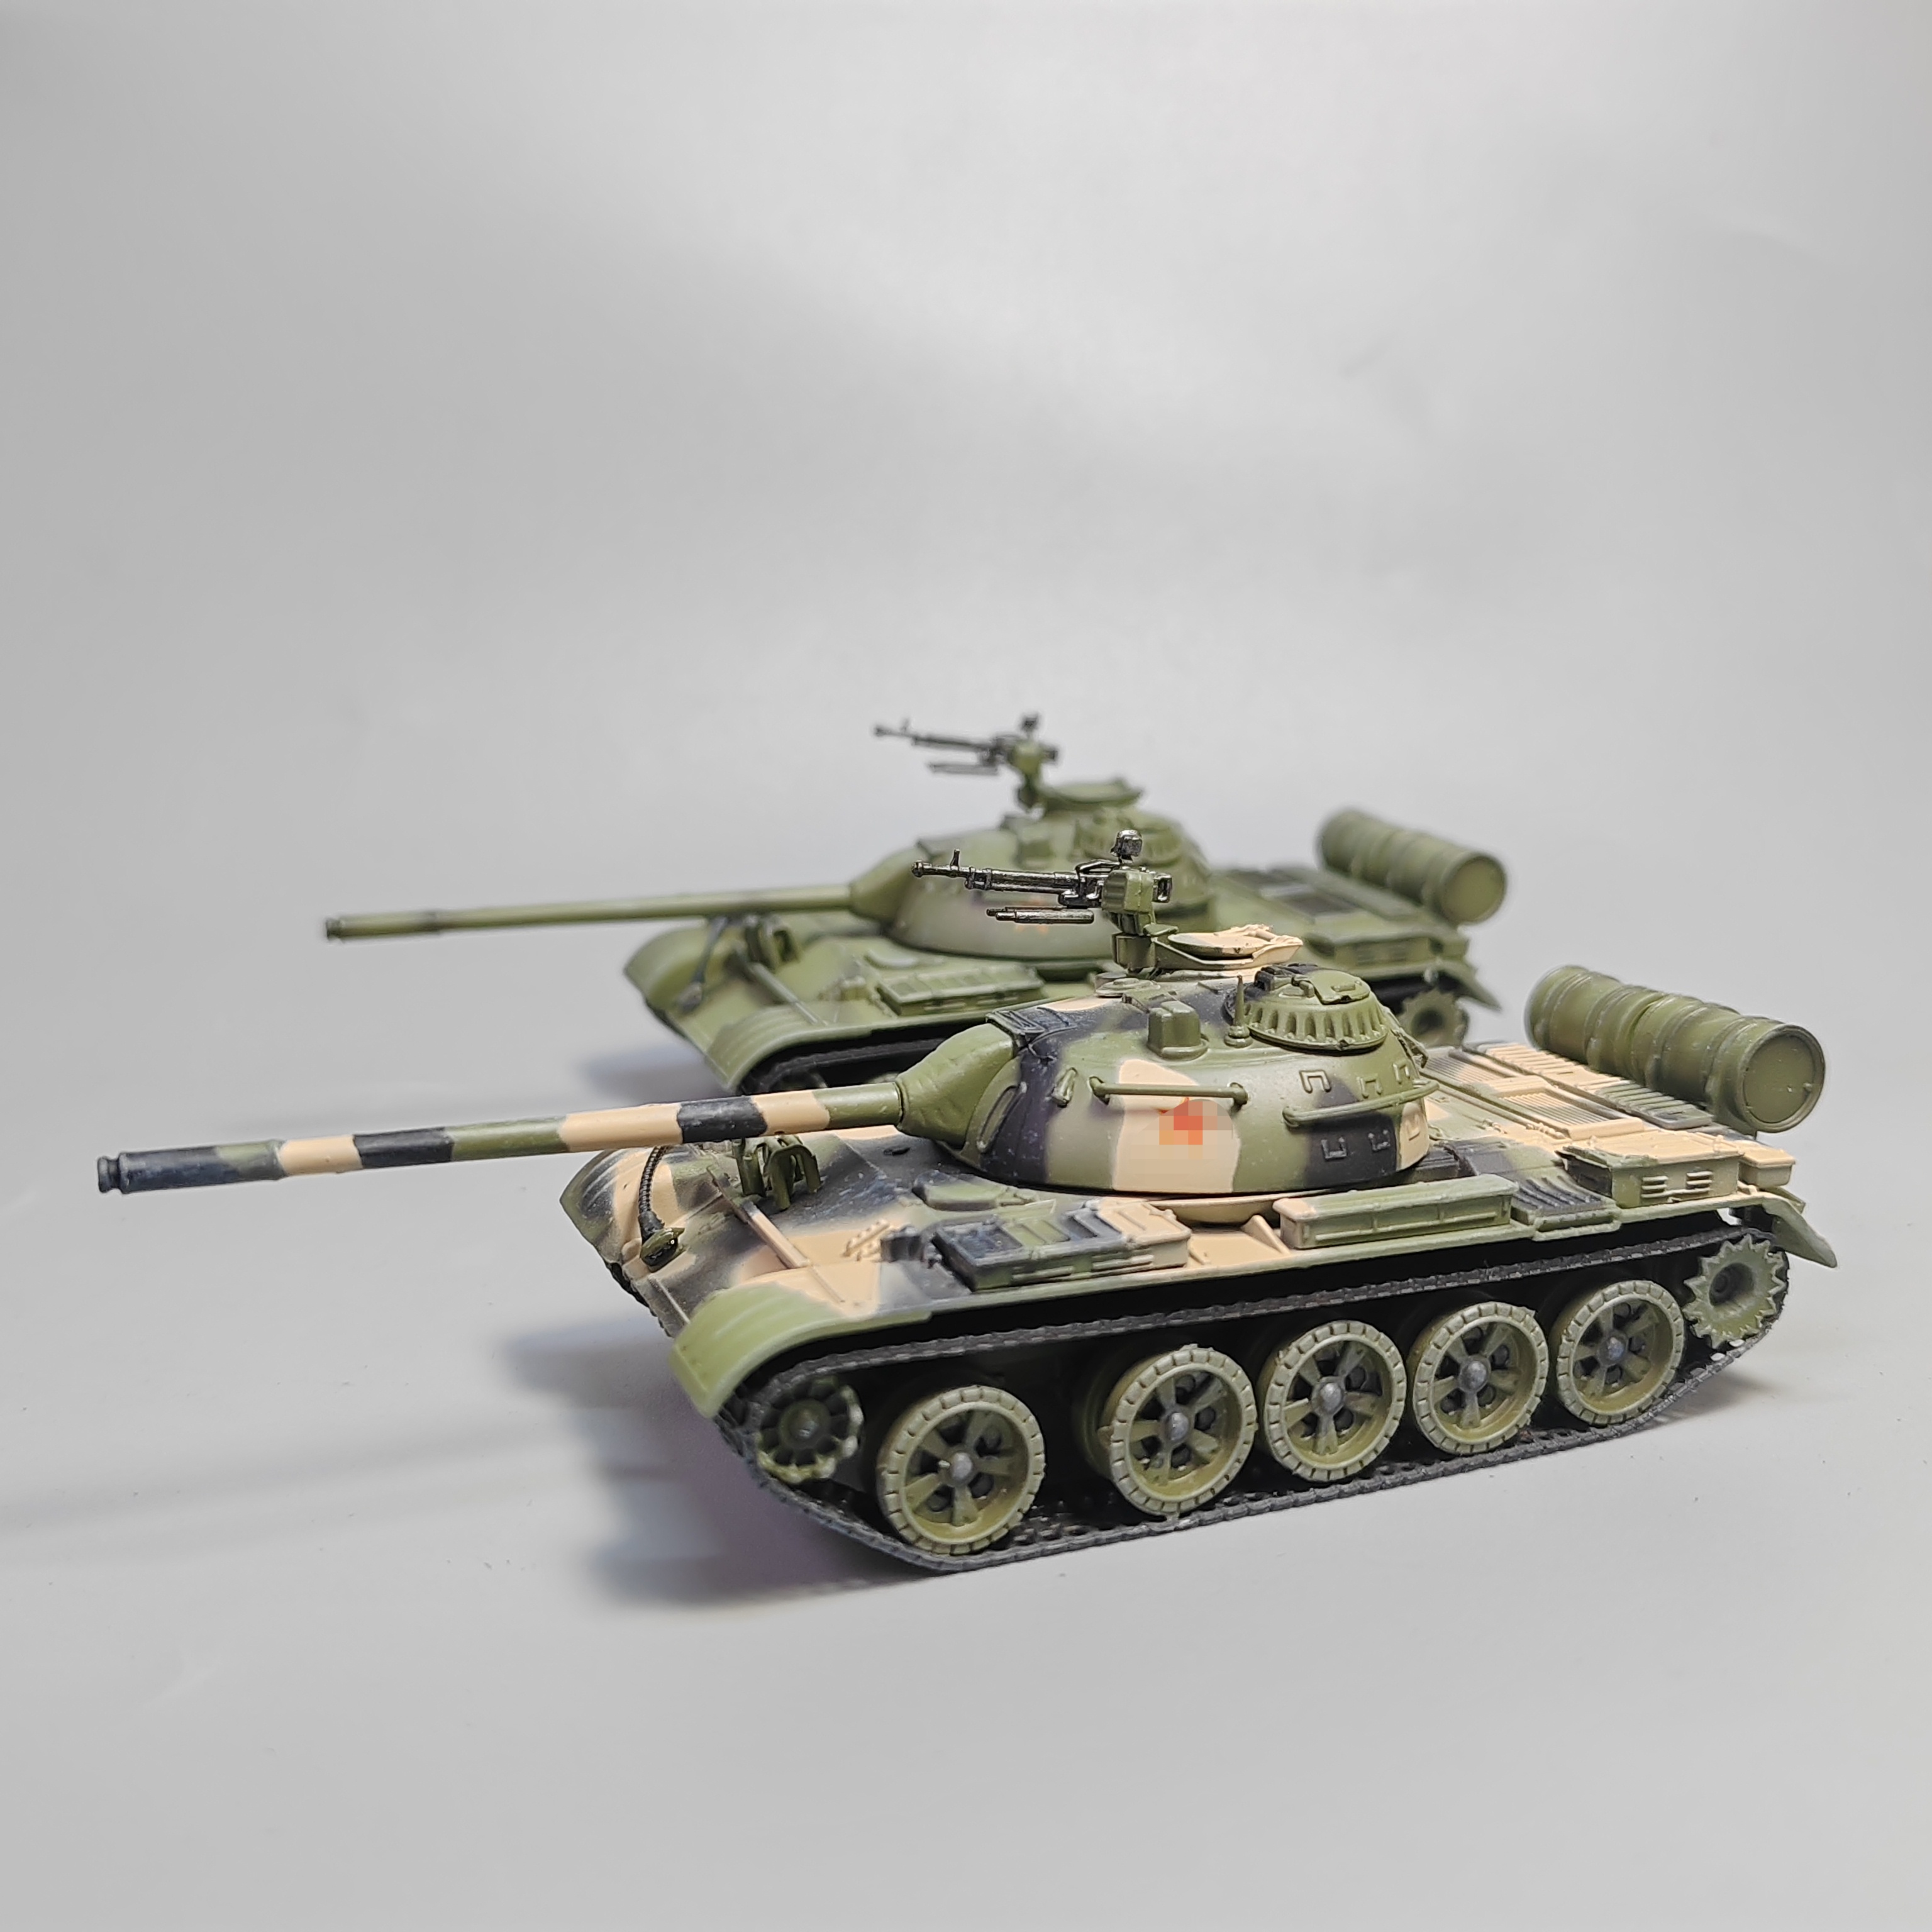 1/72中国59式主战坦克模型合金仿真军事玩具微缩艺术摄影道具礼物-图0